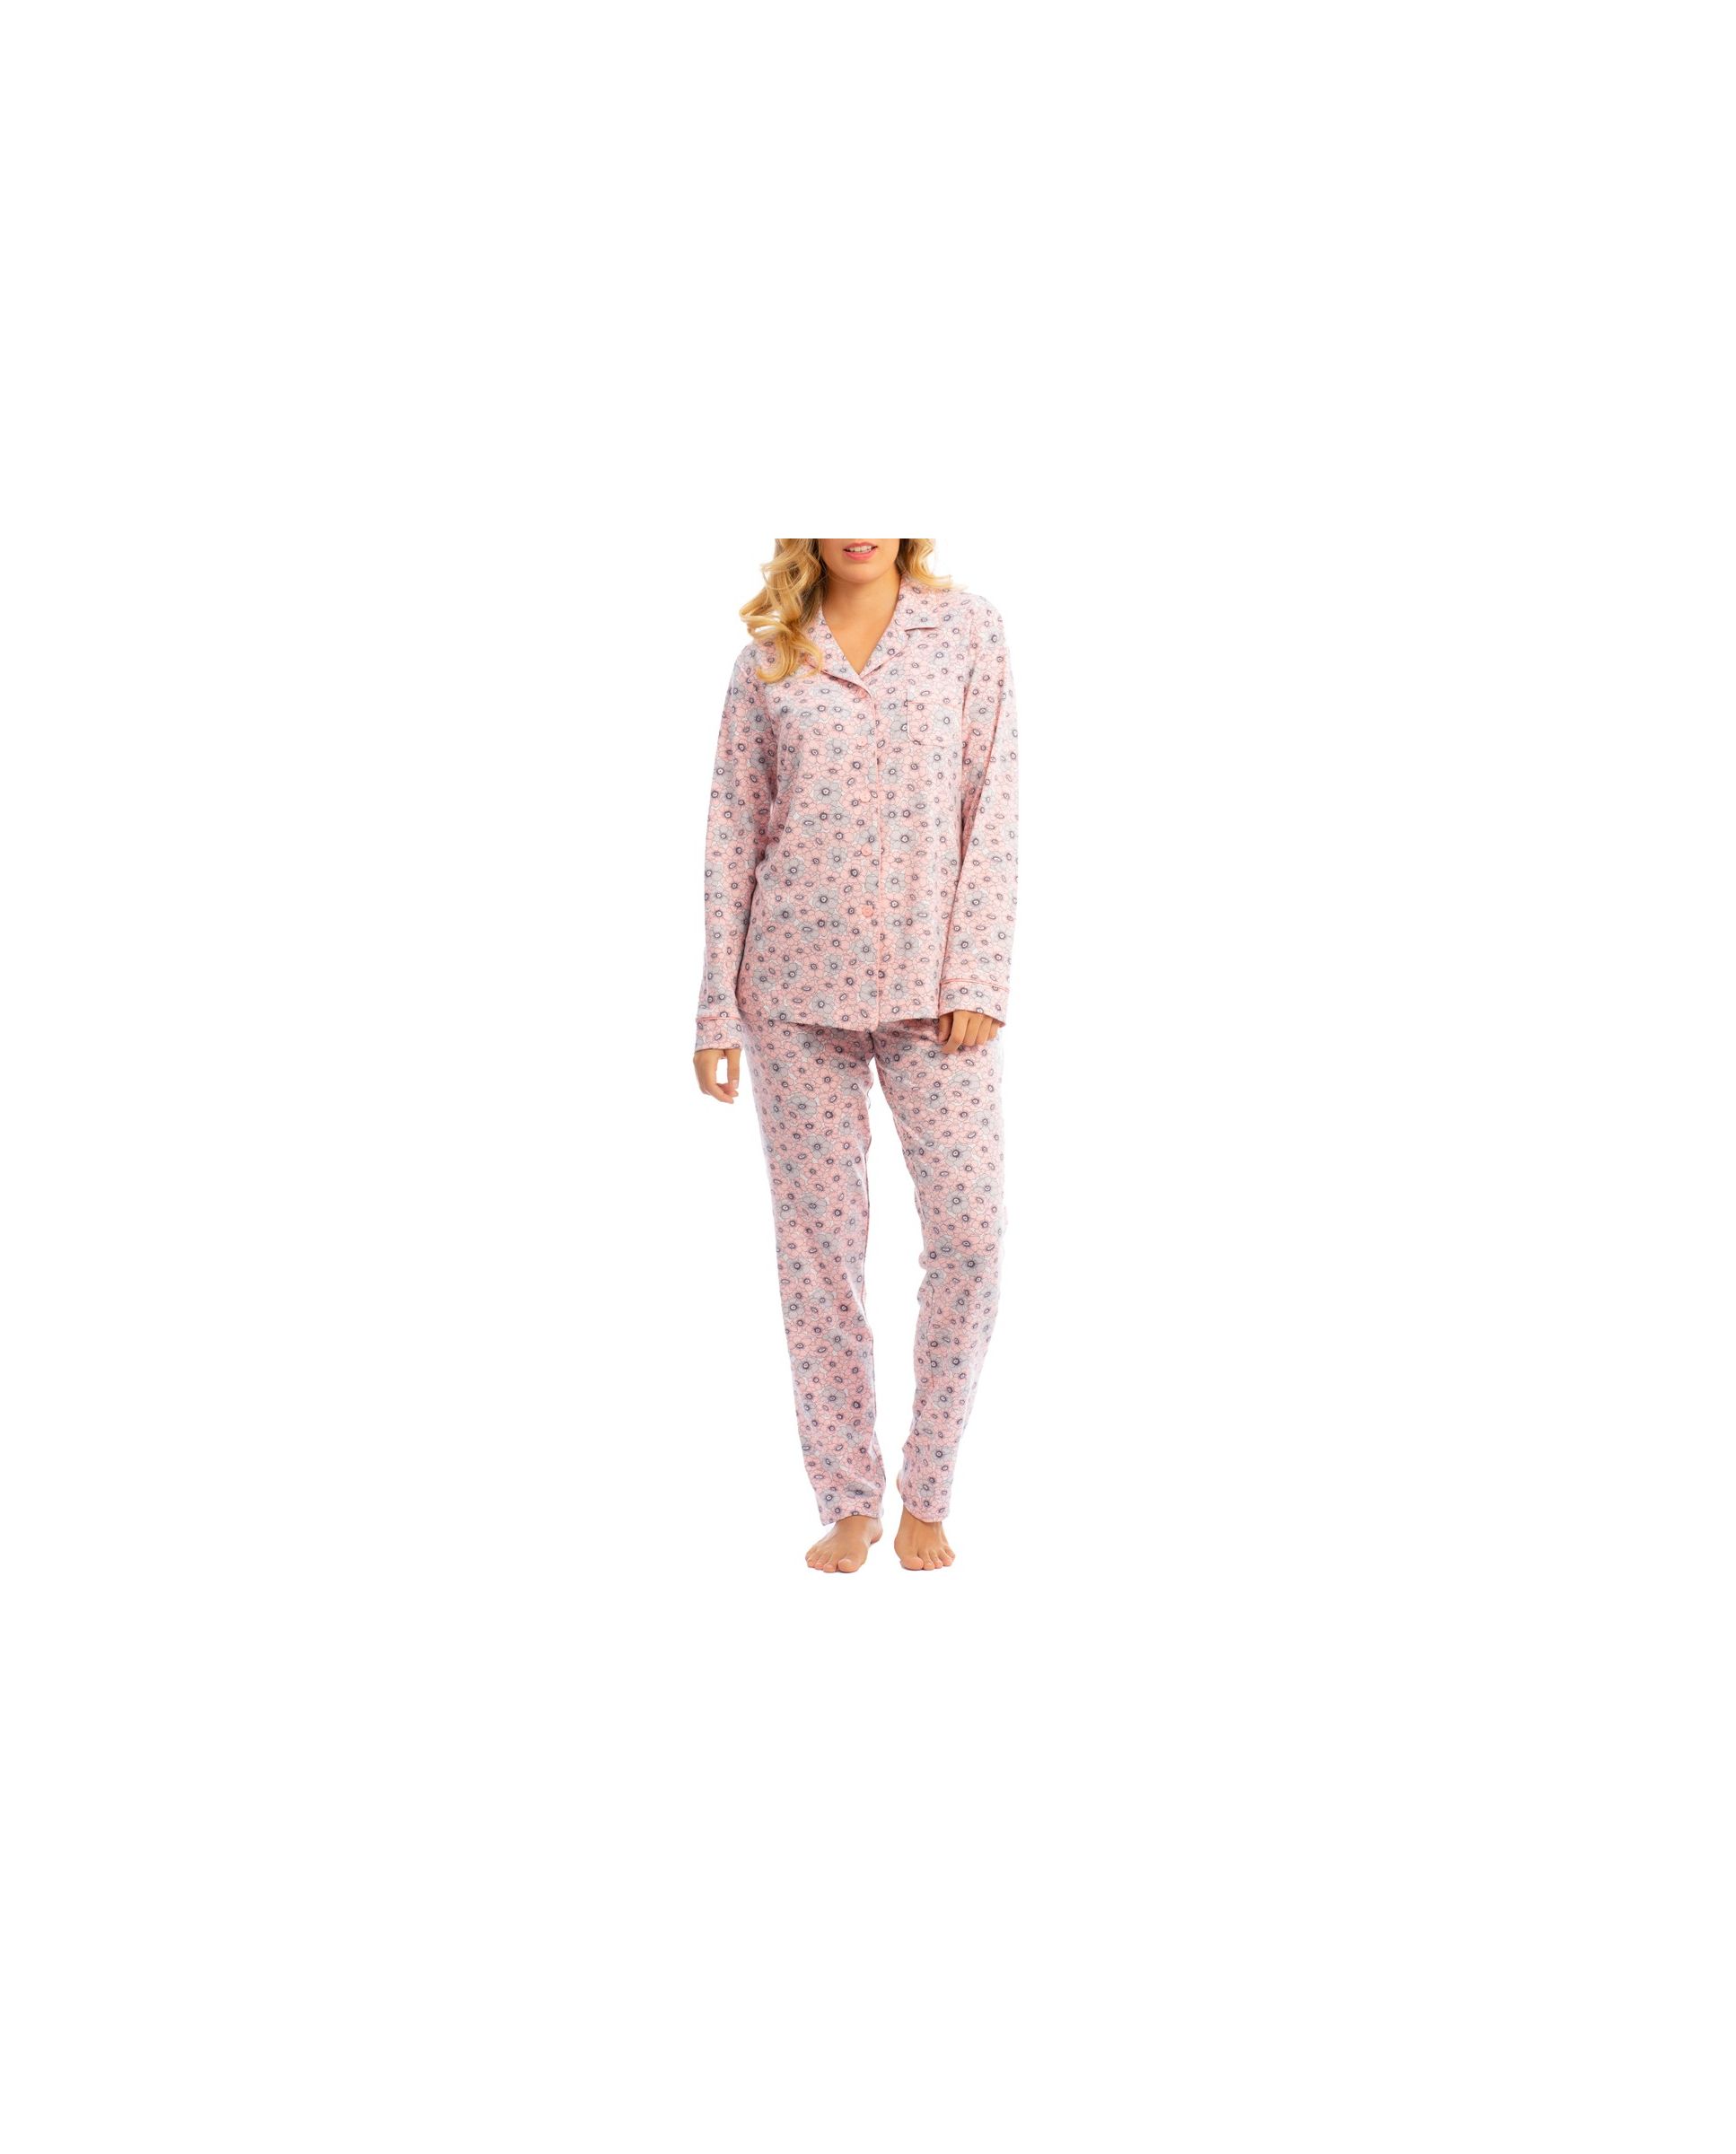 Women's winter pyjamas with open pink flowers